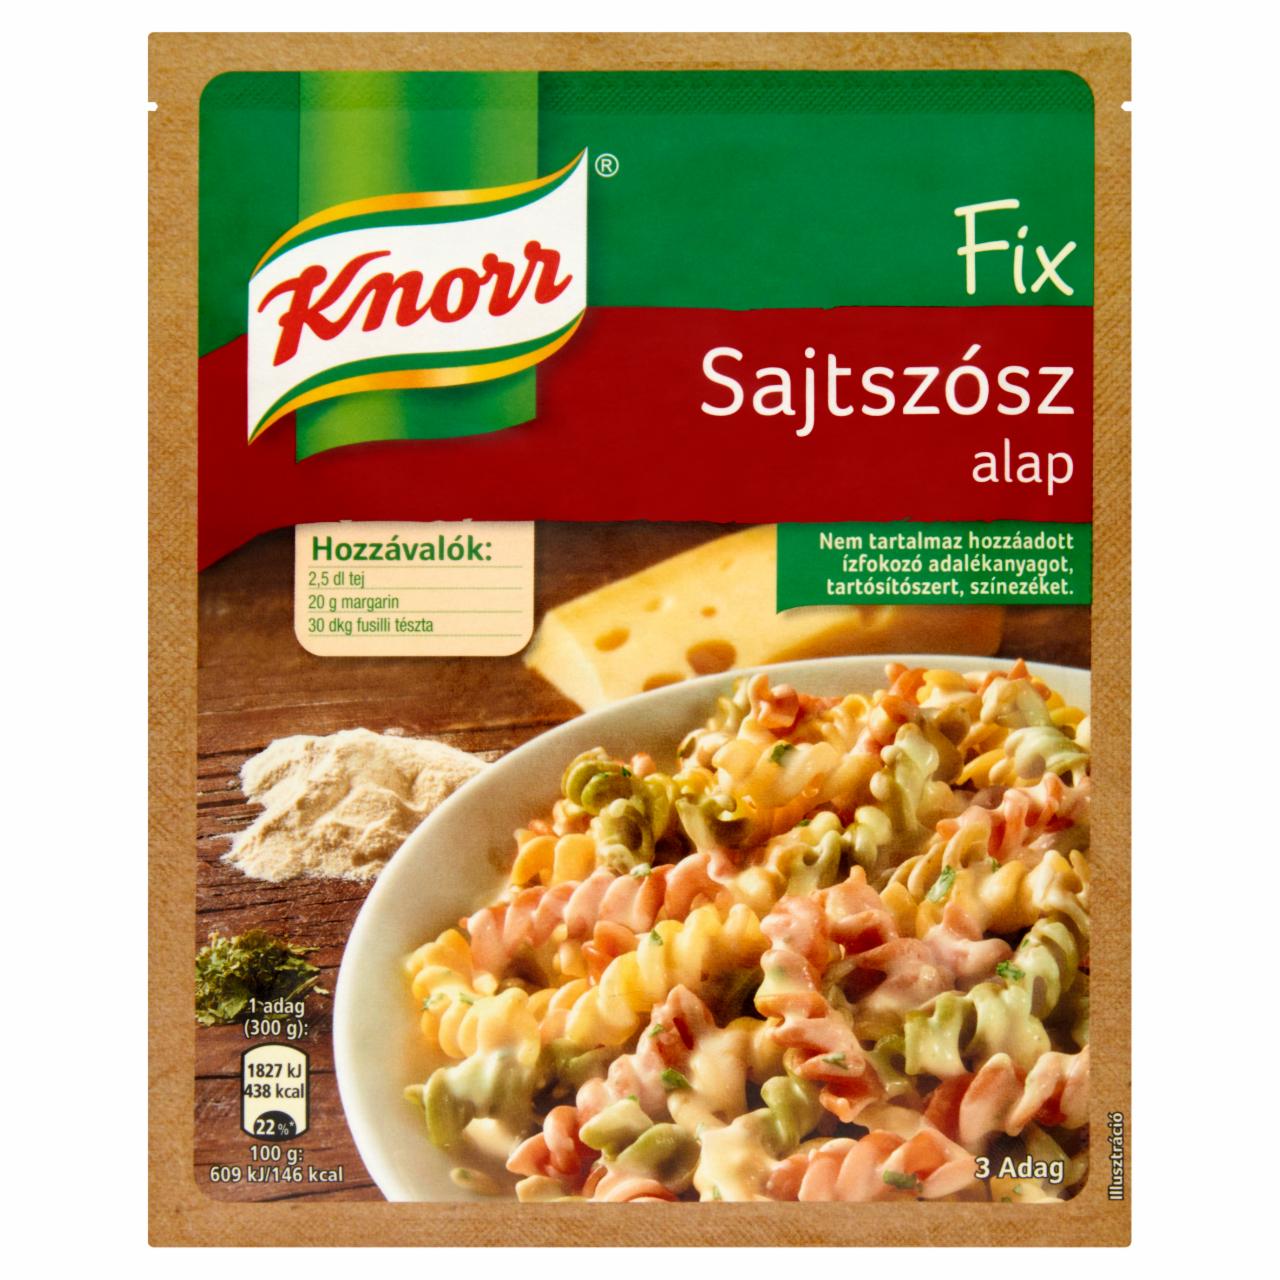 Képek - Sajtszósz alap Knorr